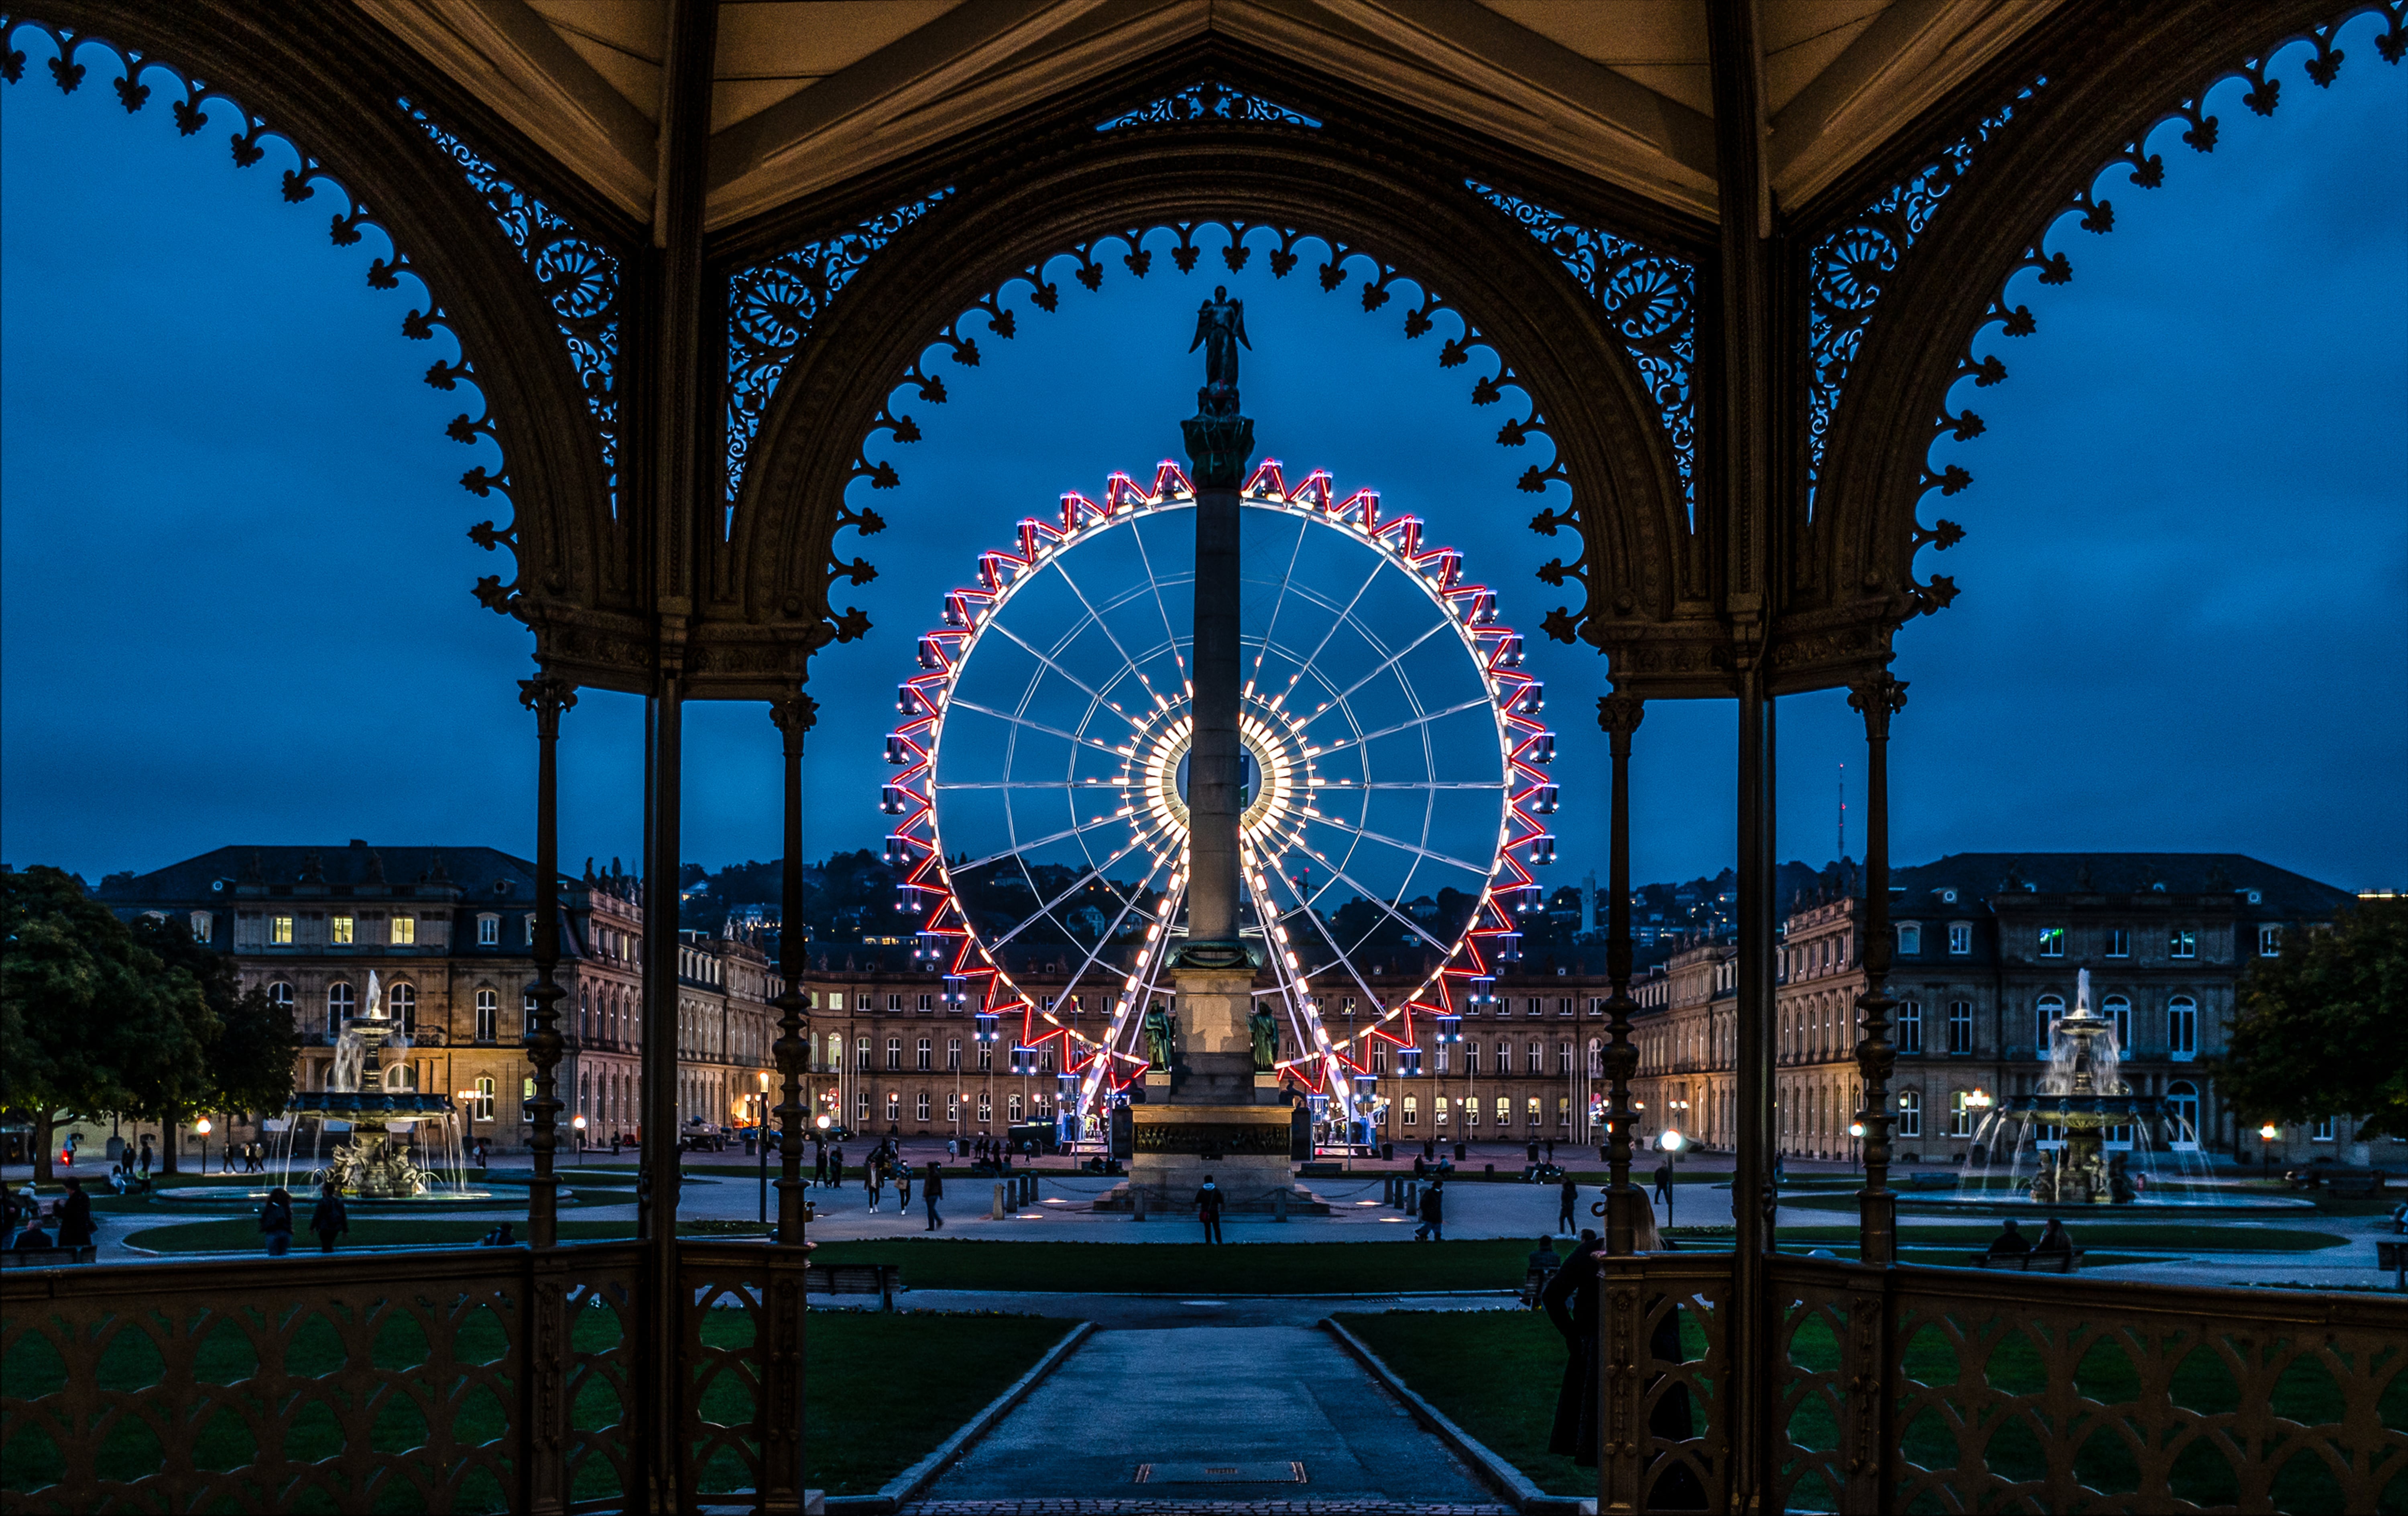 Riesenrad auf Schlossplatz abends, vom Pavillon aus gesehen